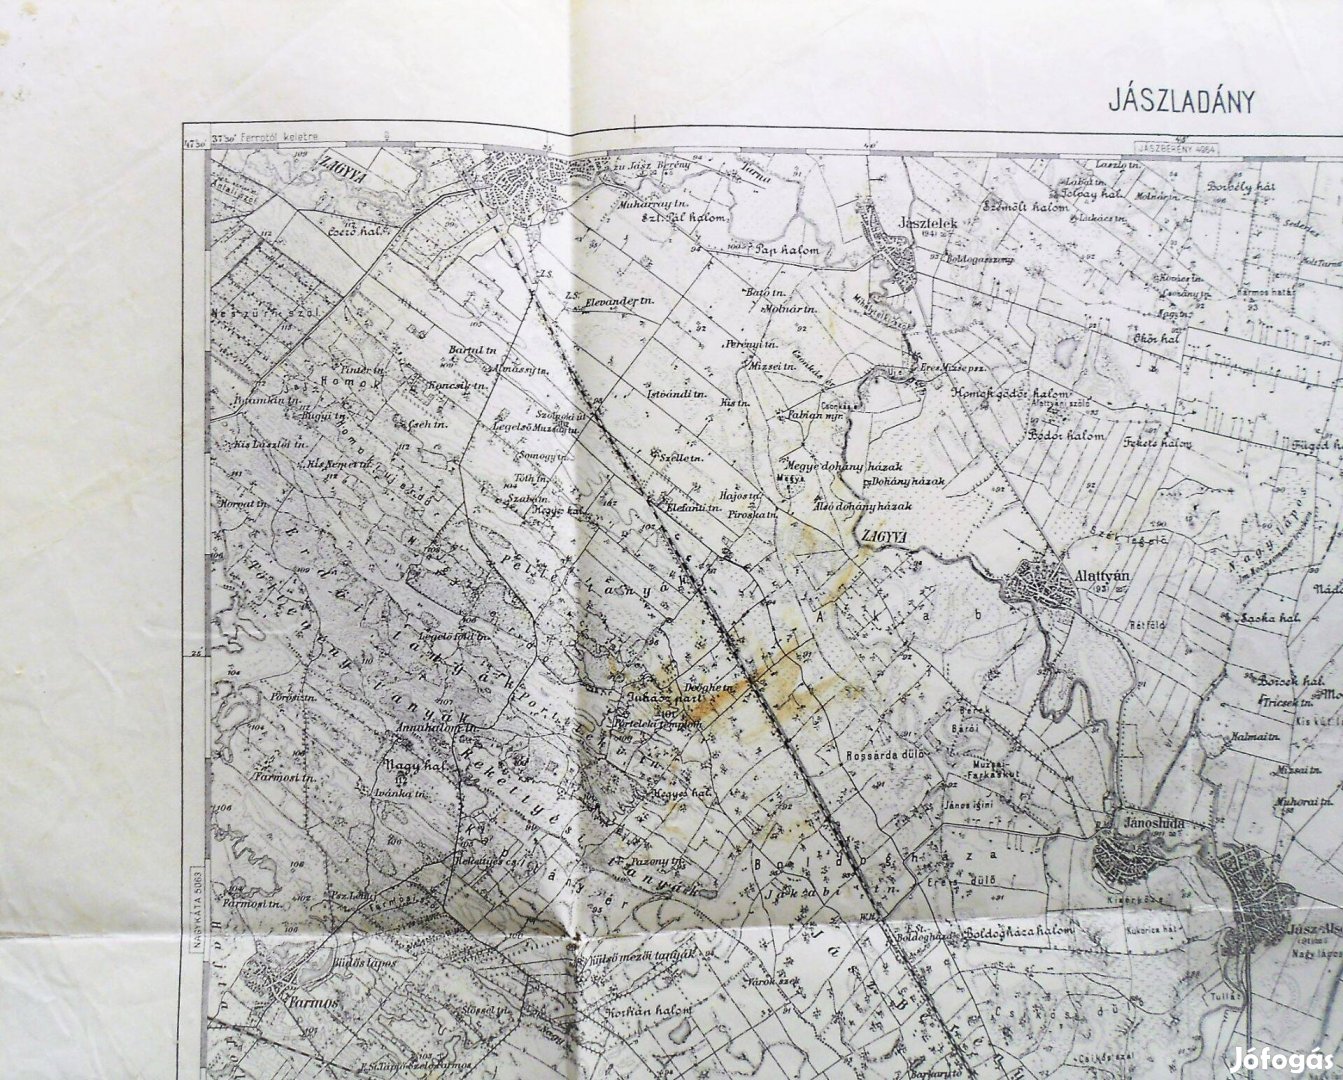 Jászladány Jásztelek Alattyán régi térkép. 1929